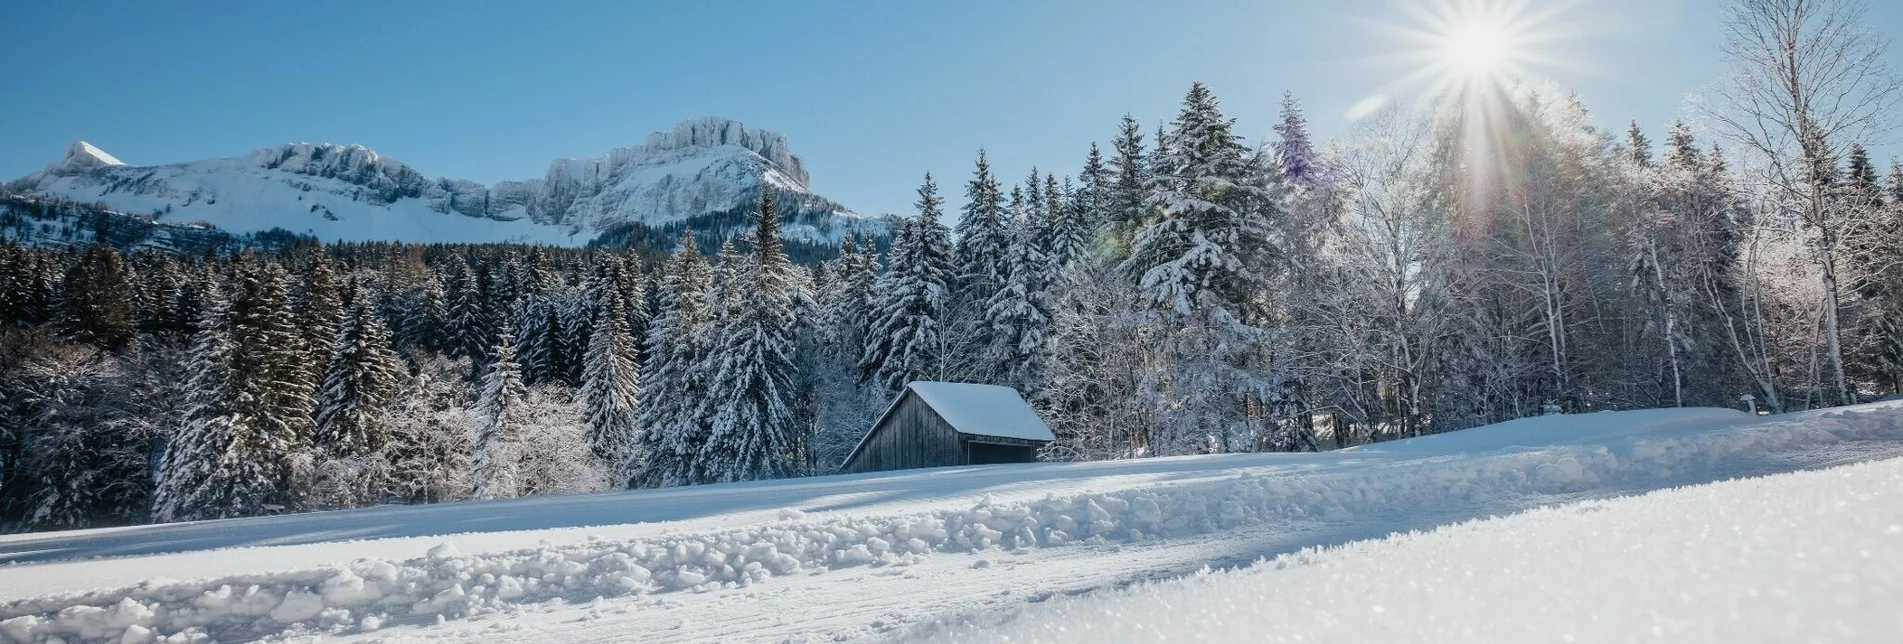 Winterwandern Winterwanderung von der Loser Skiarena zur Blaa Alm - Touren-Impression #1 | © Ausseerland